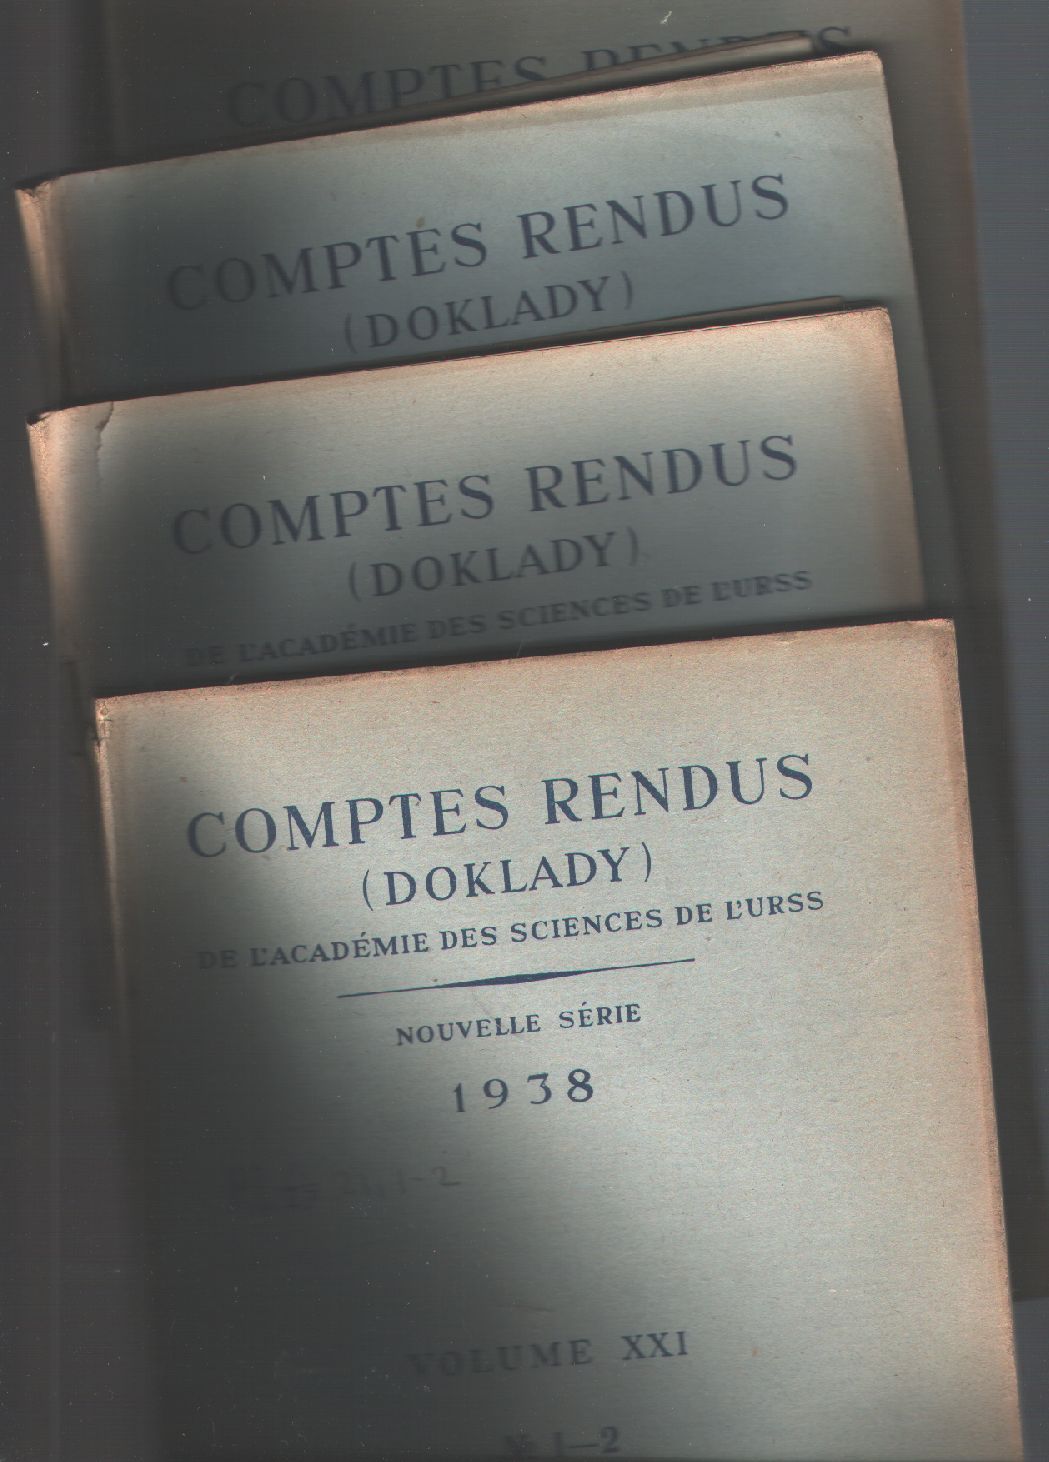 Academie des Sciences de L Urss,  Fersman Borissiak u.a.  Comptes Rendus (Doklady) Nouvelle Serie 1938 Volume XXI  Nr. 1 - 6 